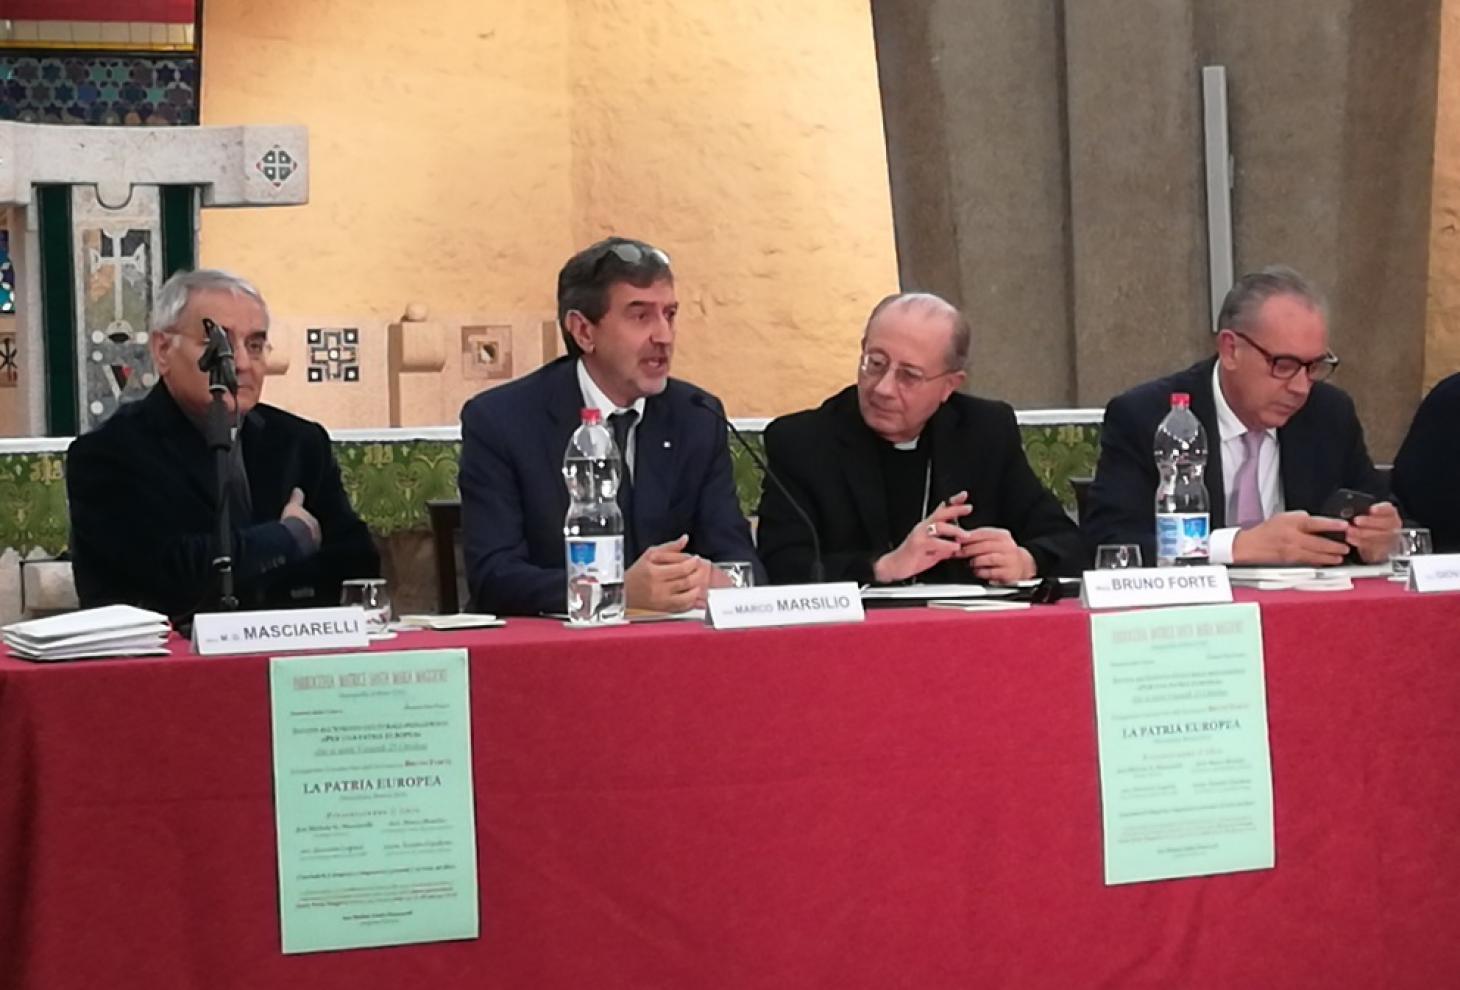 Da sinistra don Michele Masciarelli, il presidente Marco Marsilio, l'Arcivescovo metraopolita di Chieti-Vasto Mons. Bruno Forte e Mons. Cipollone, vescovo della Diocesi Lanciano -Ortona  